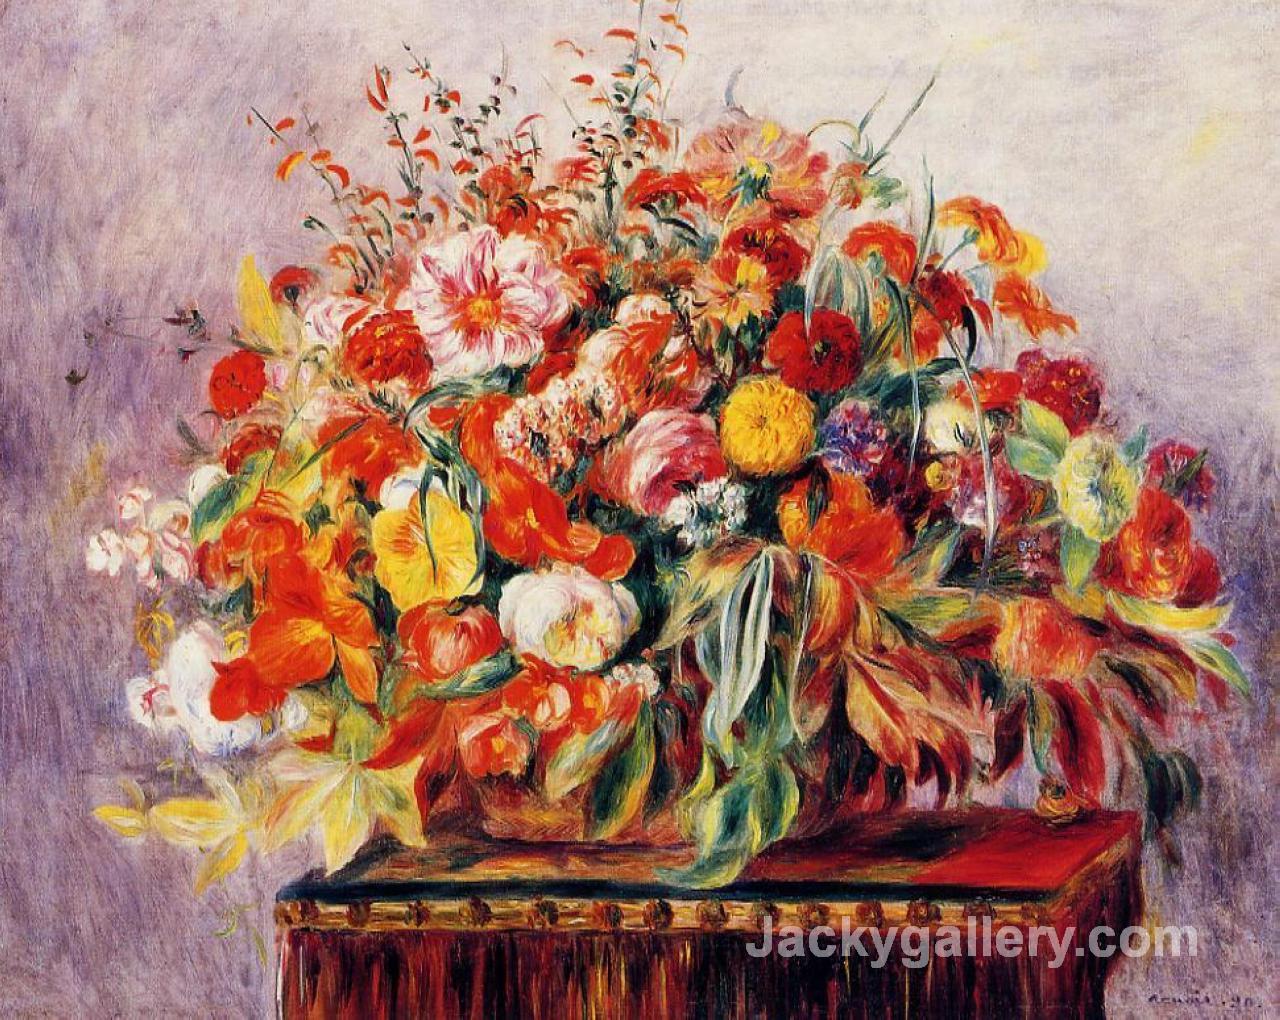 Basket of Flowers by Renoir by Pierre Auguste Renoir paintings reproduction